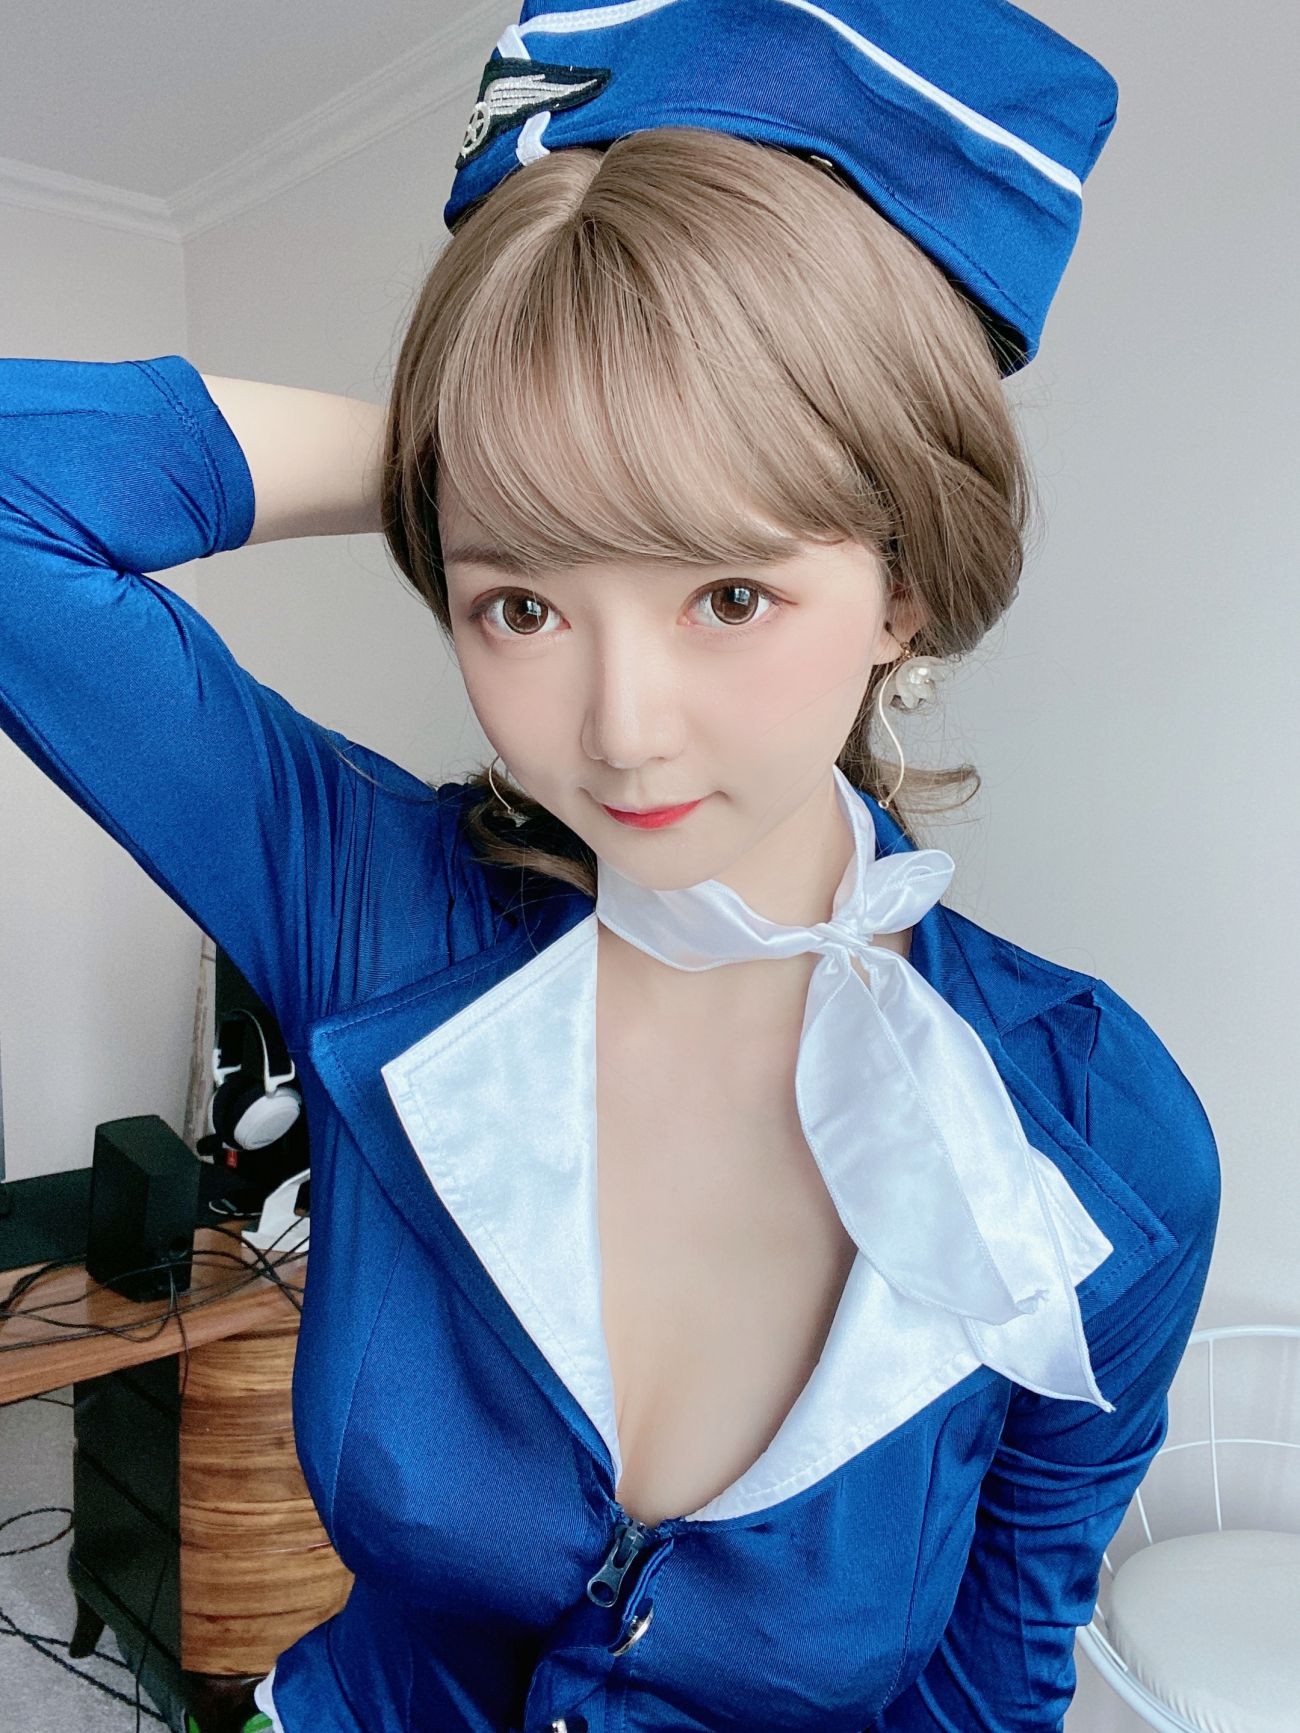 微博美少女51酱性感写真蓝色制服装 (11)